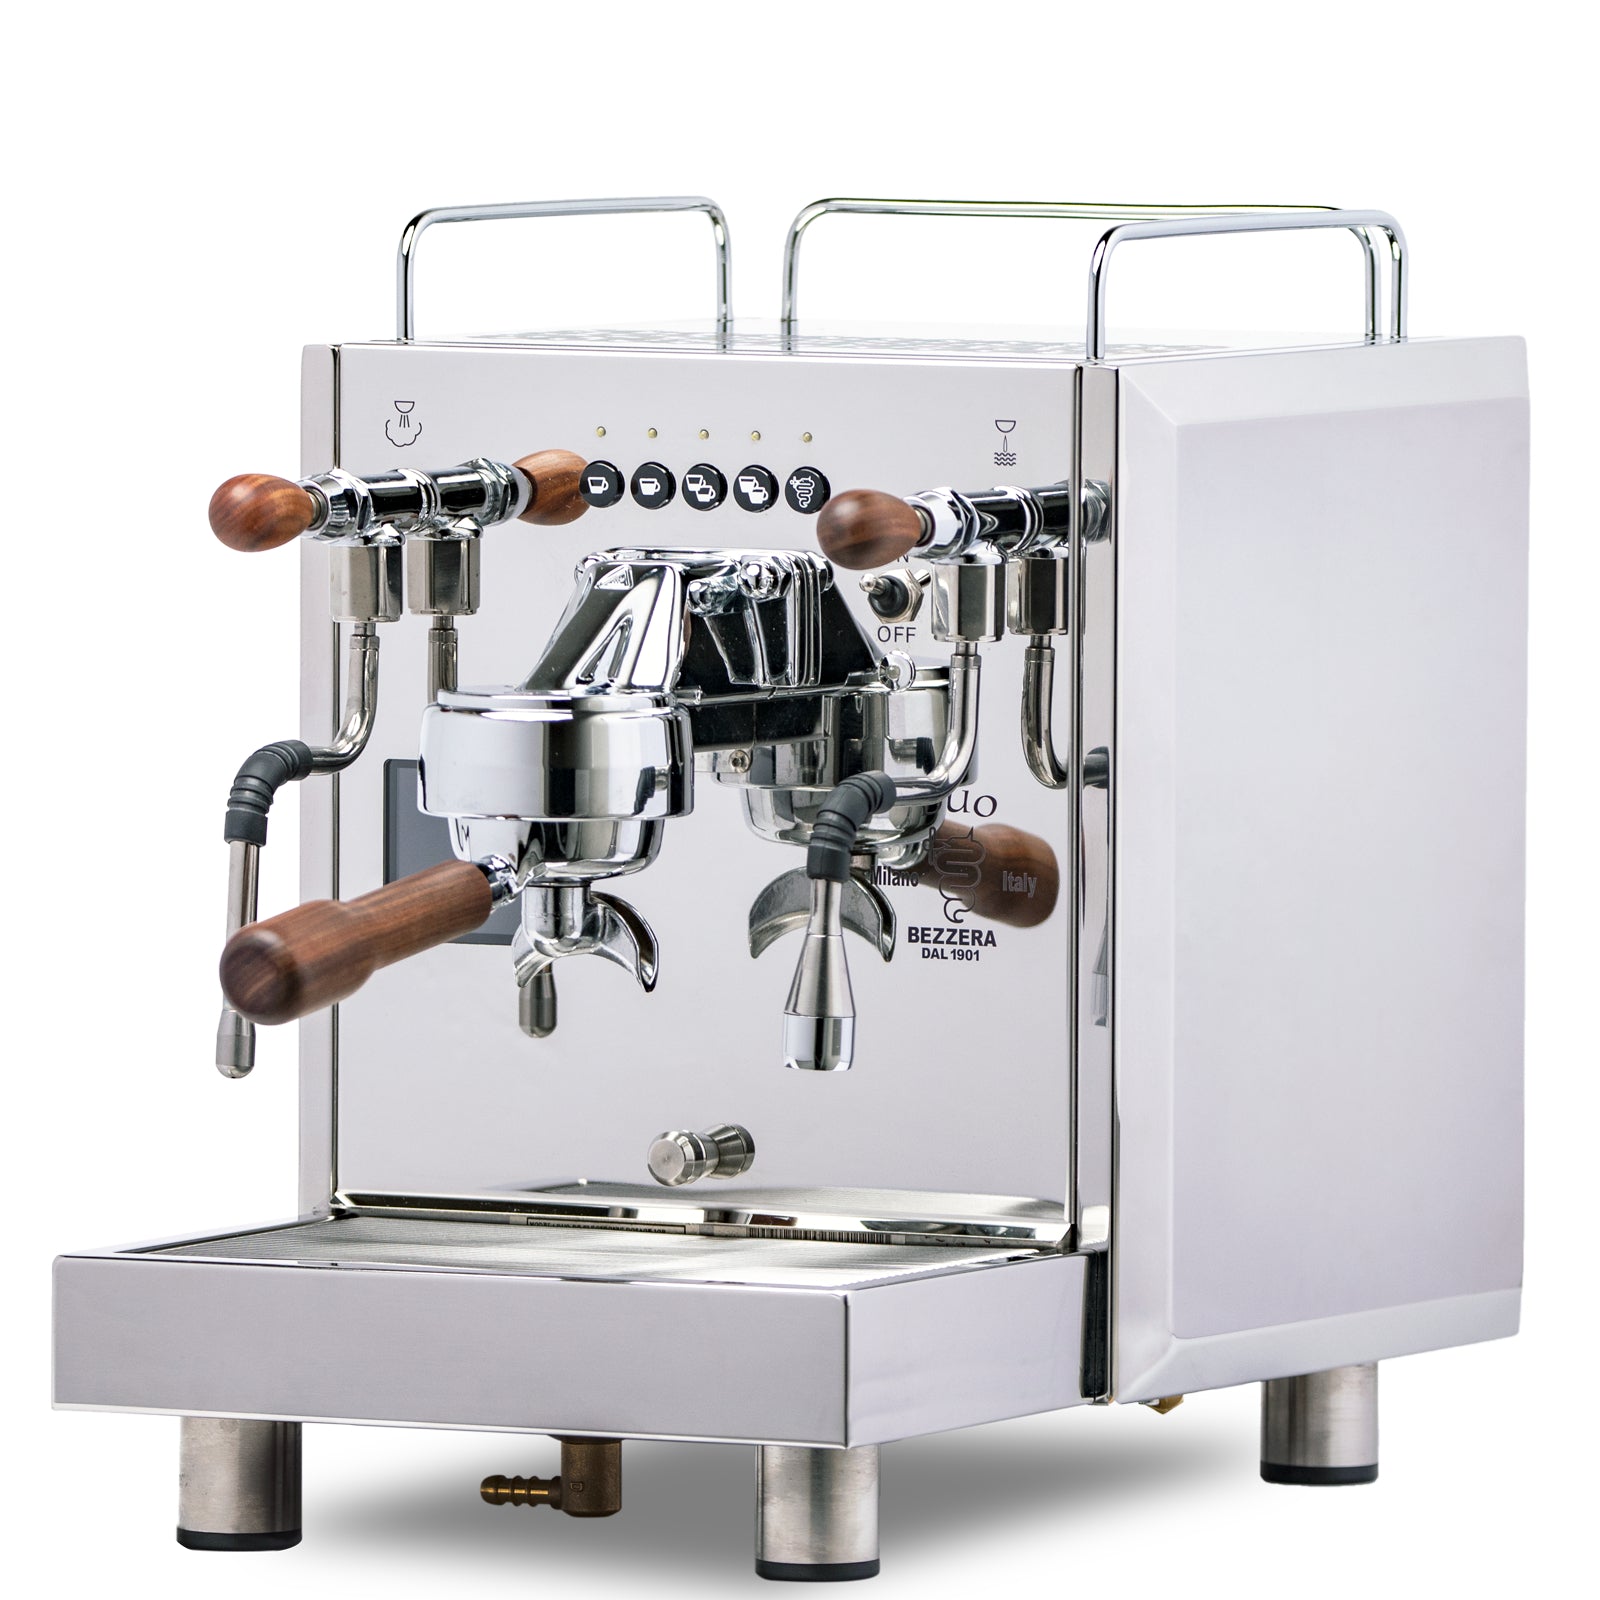 Bezzera - Espresso coffee machines since 1901